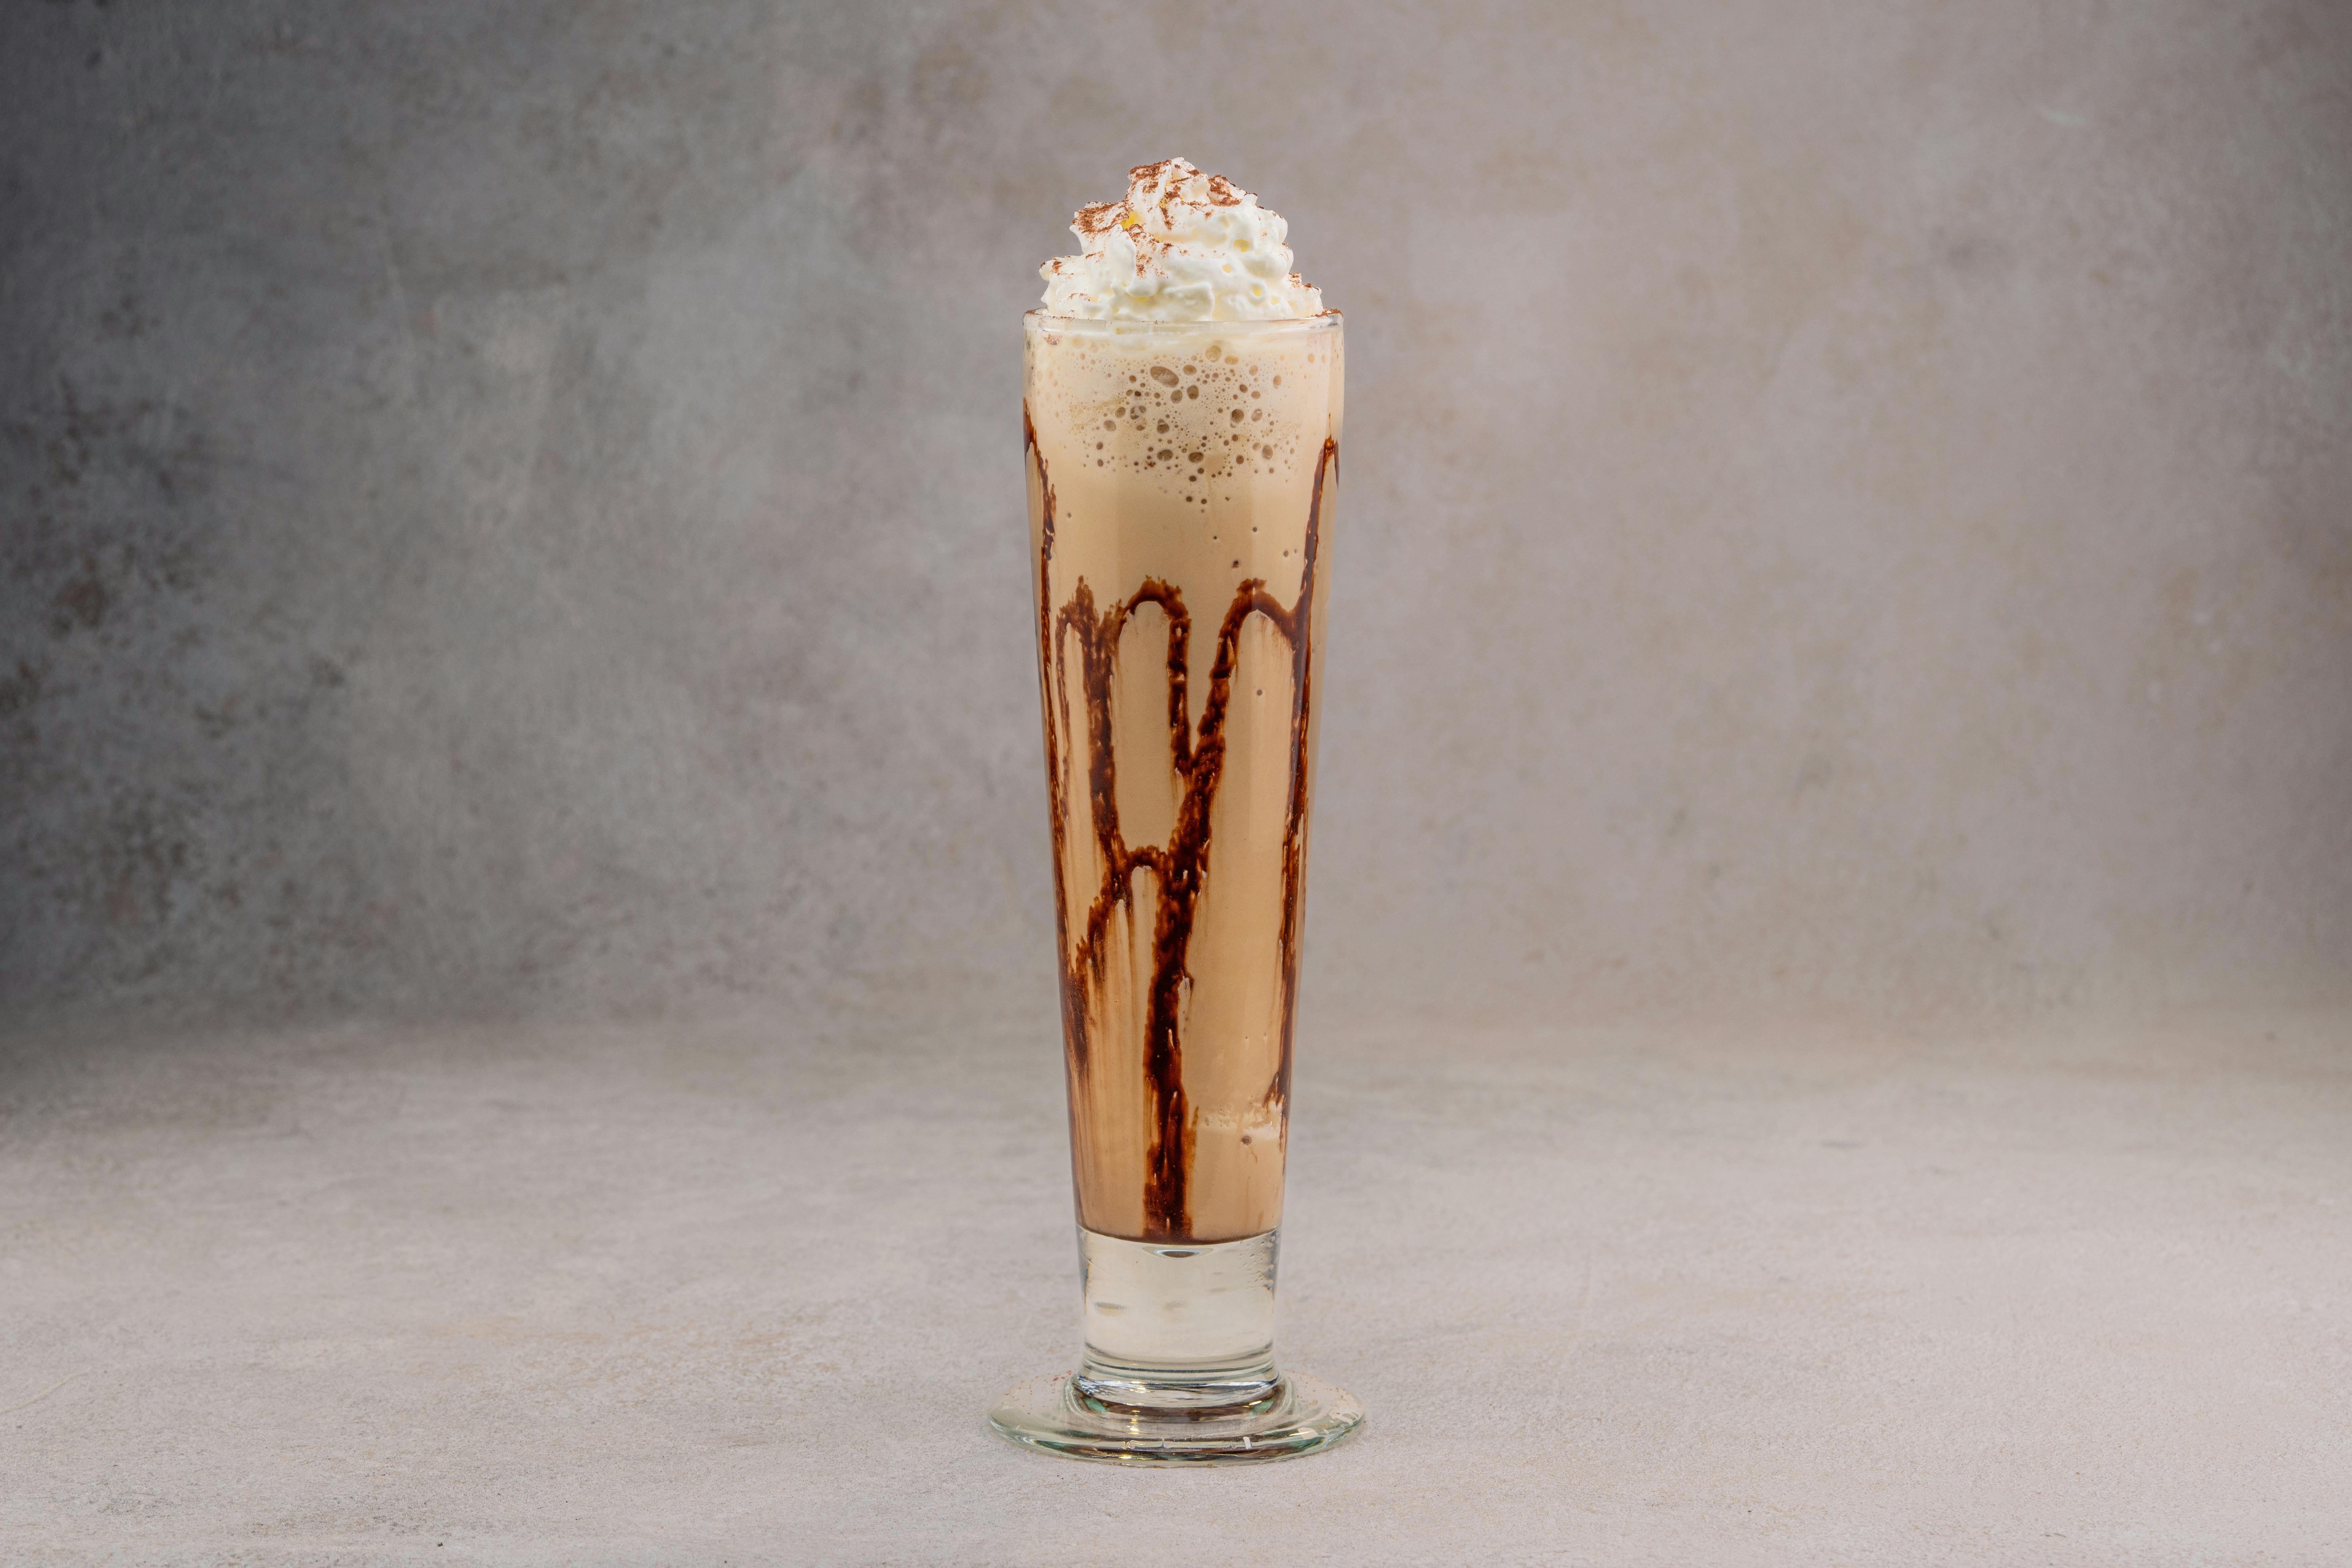 Ice cream mug on table photo – Free Milkshake Image on Unsplash